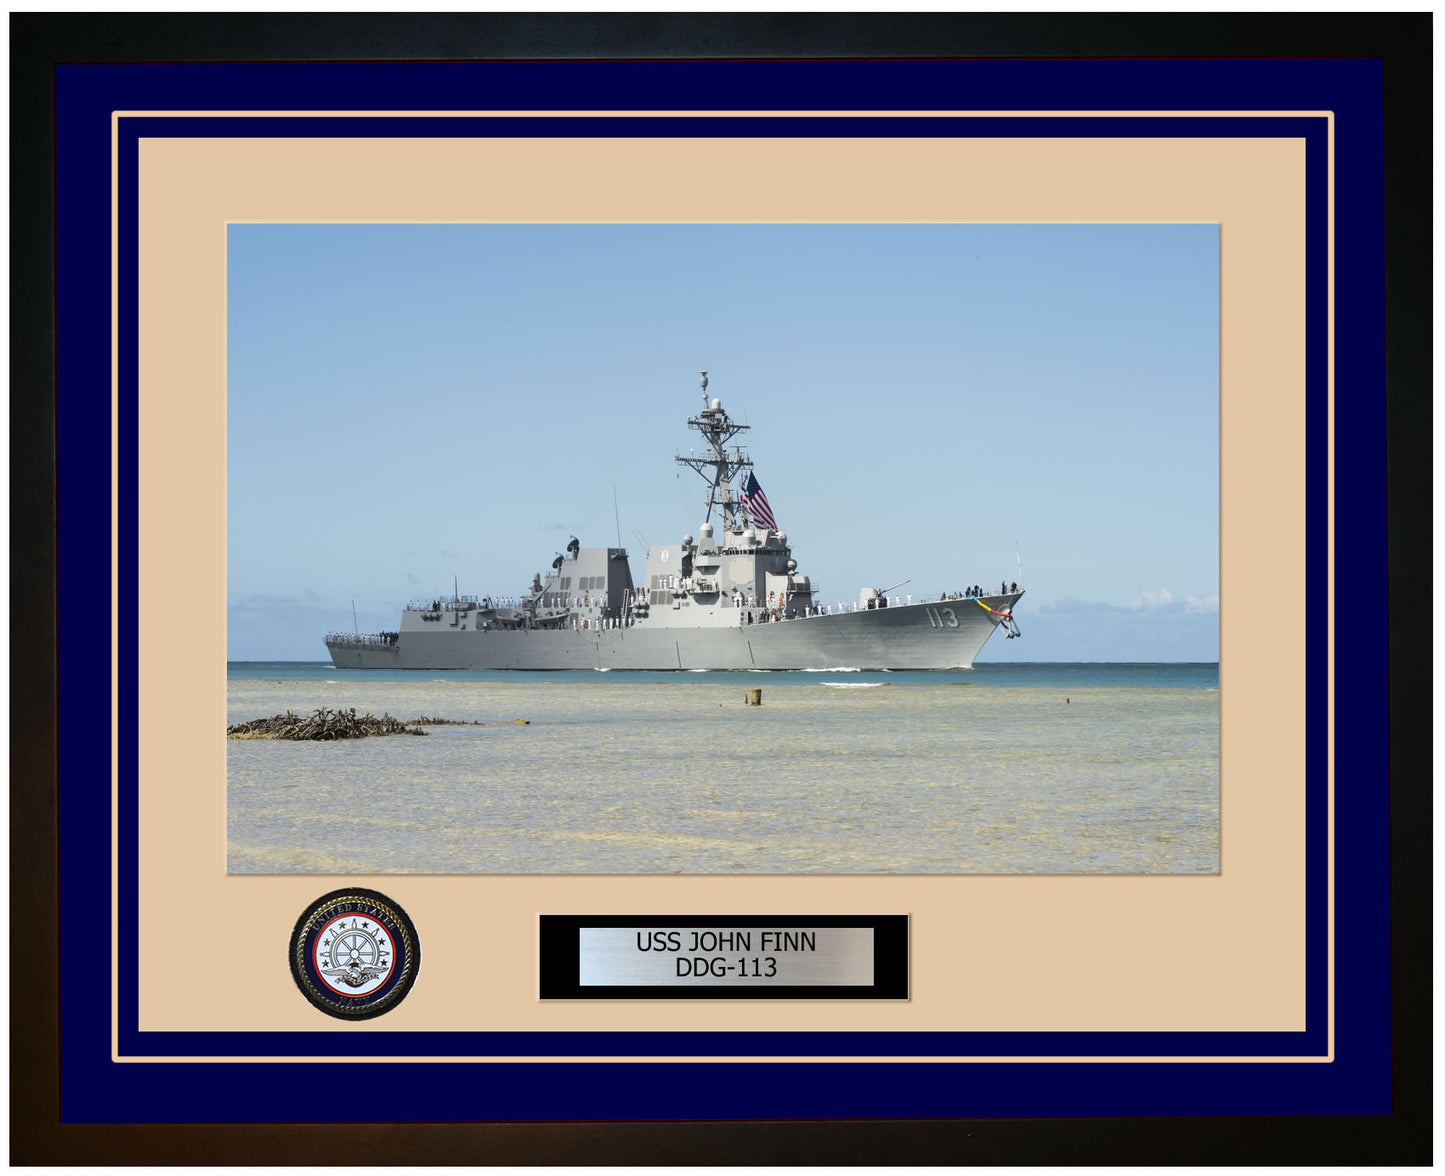 USS JOHN FINN DDG-113 Framed Navy Ship Photo Blue